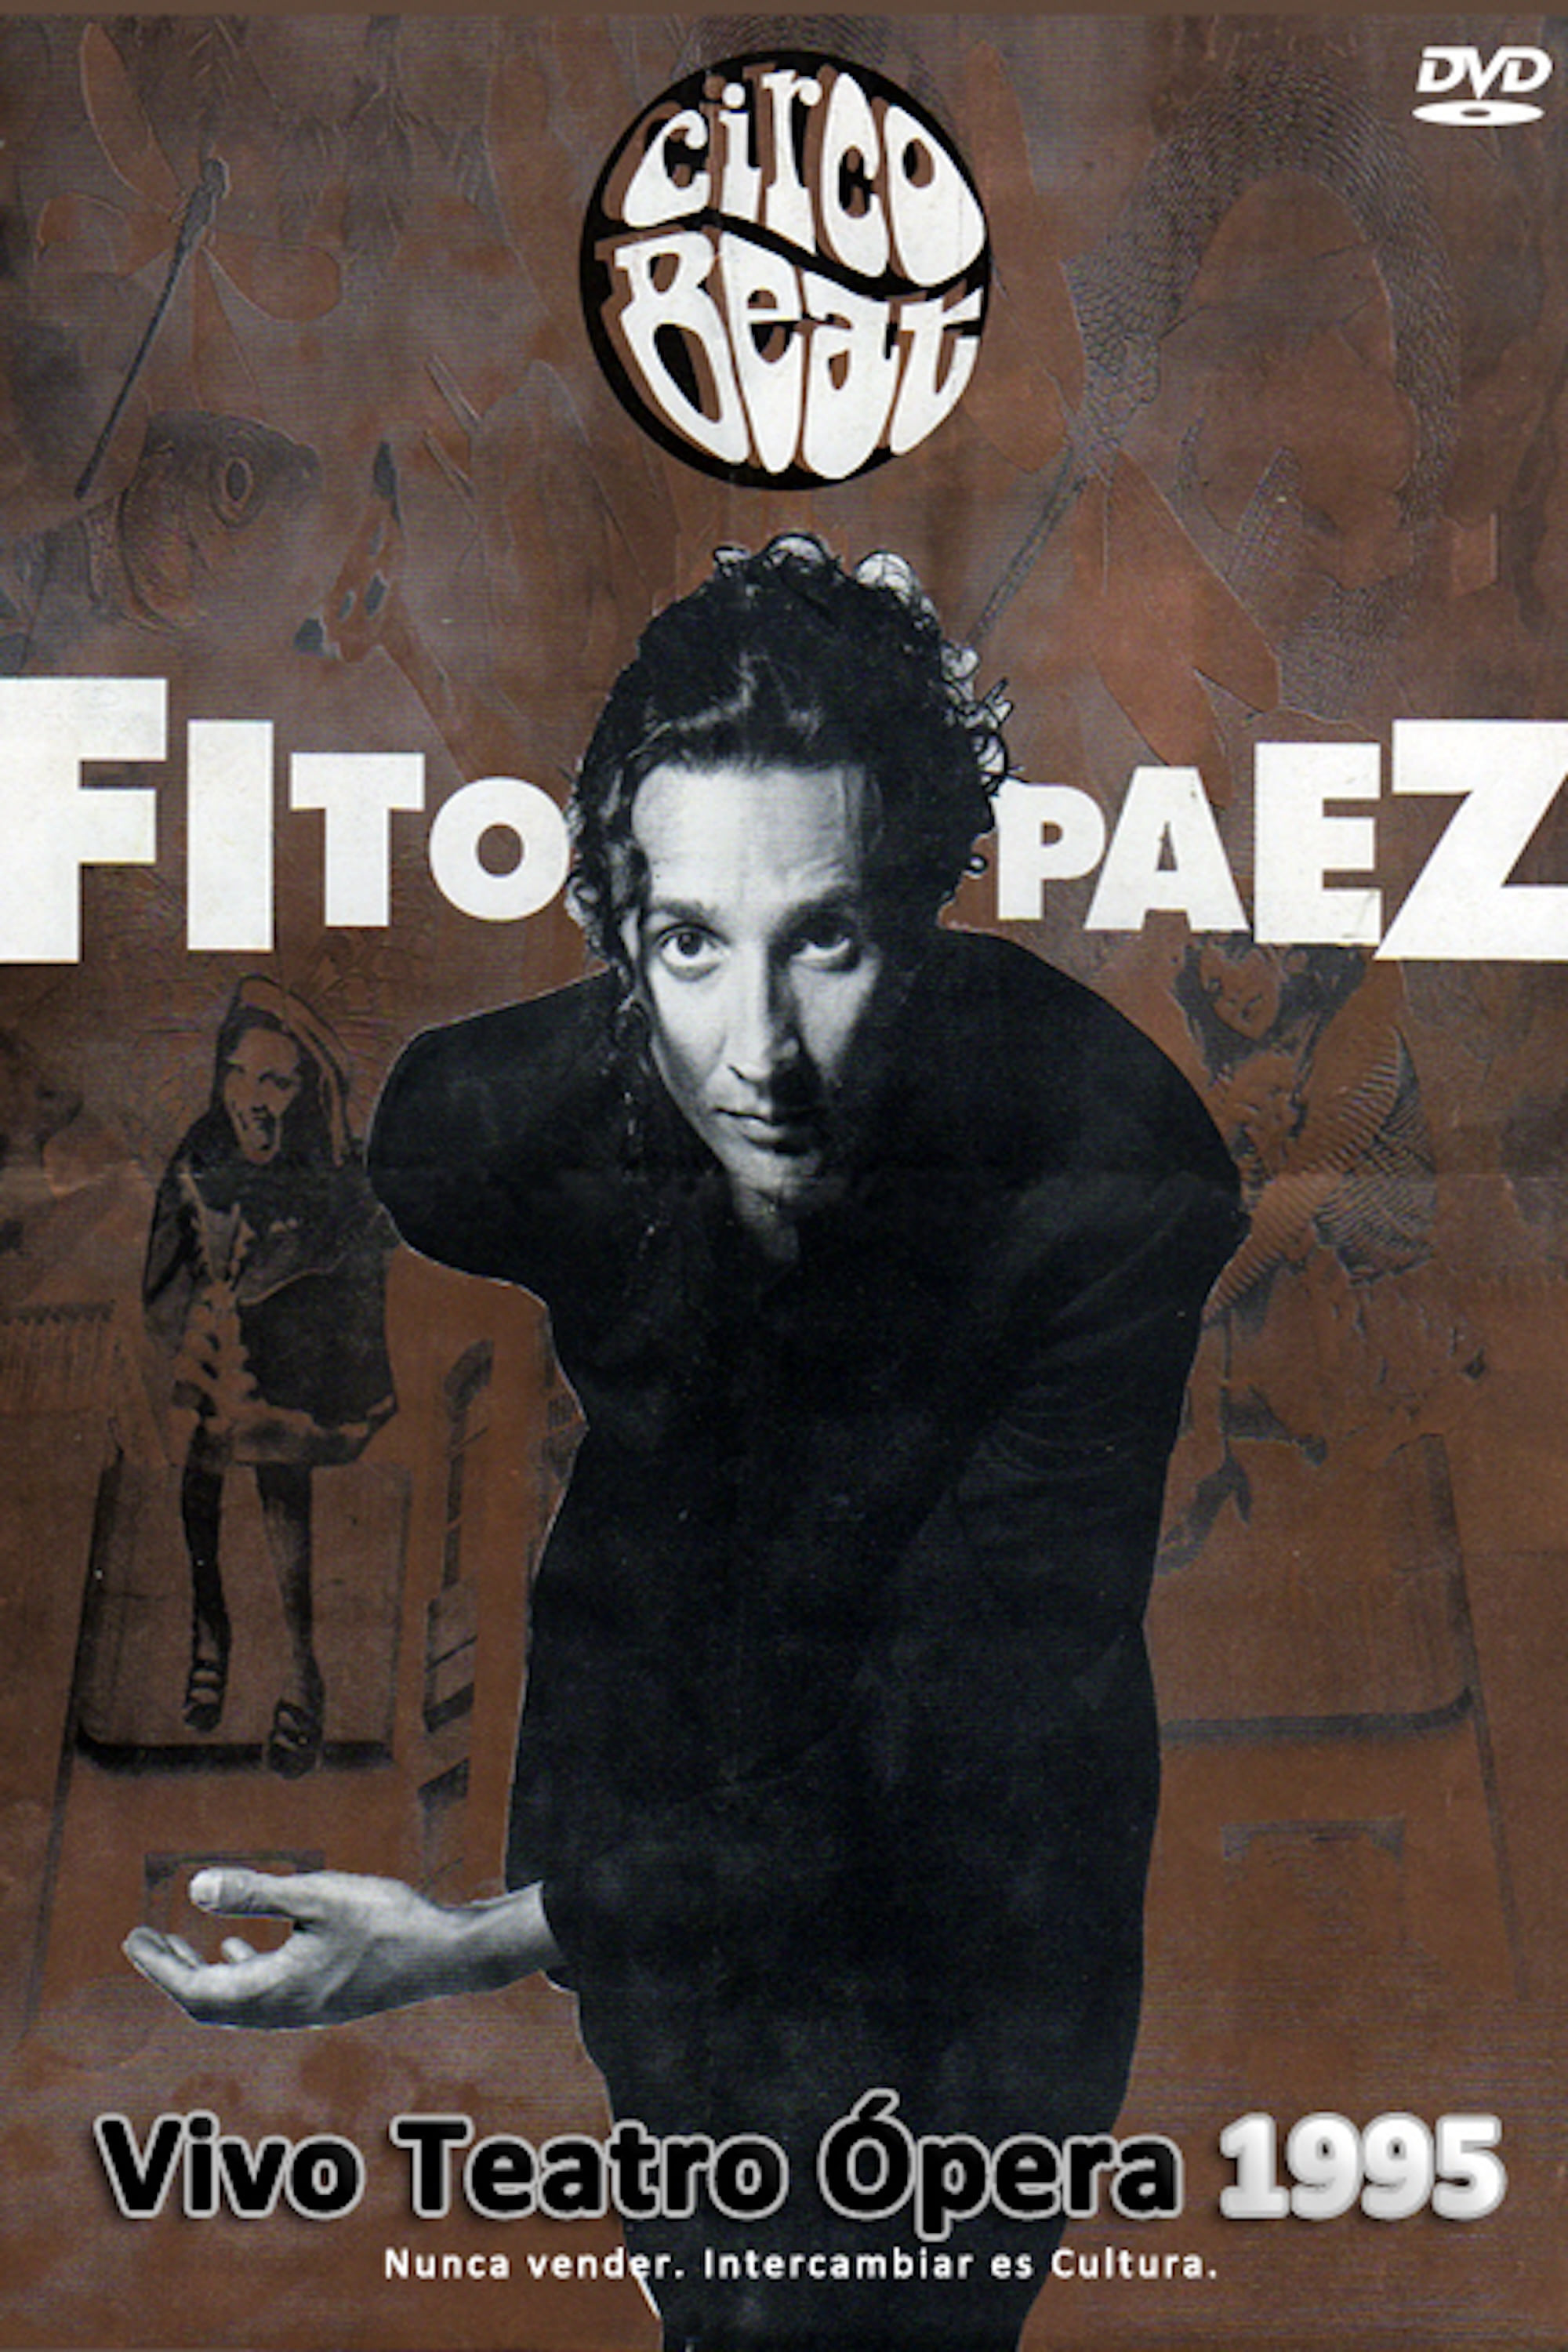 Fito Páez: Teatro Opera Circo Beat